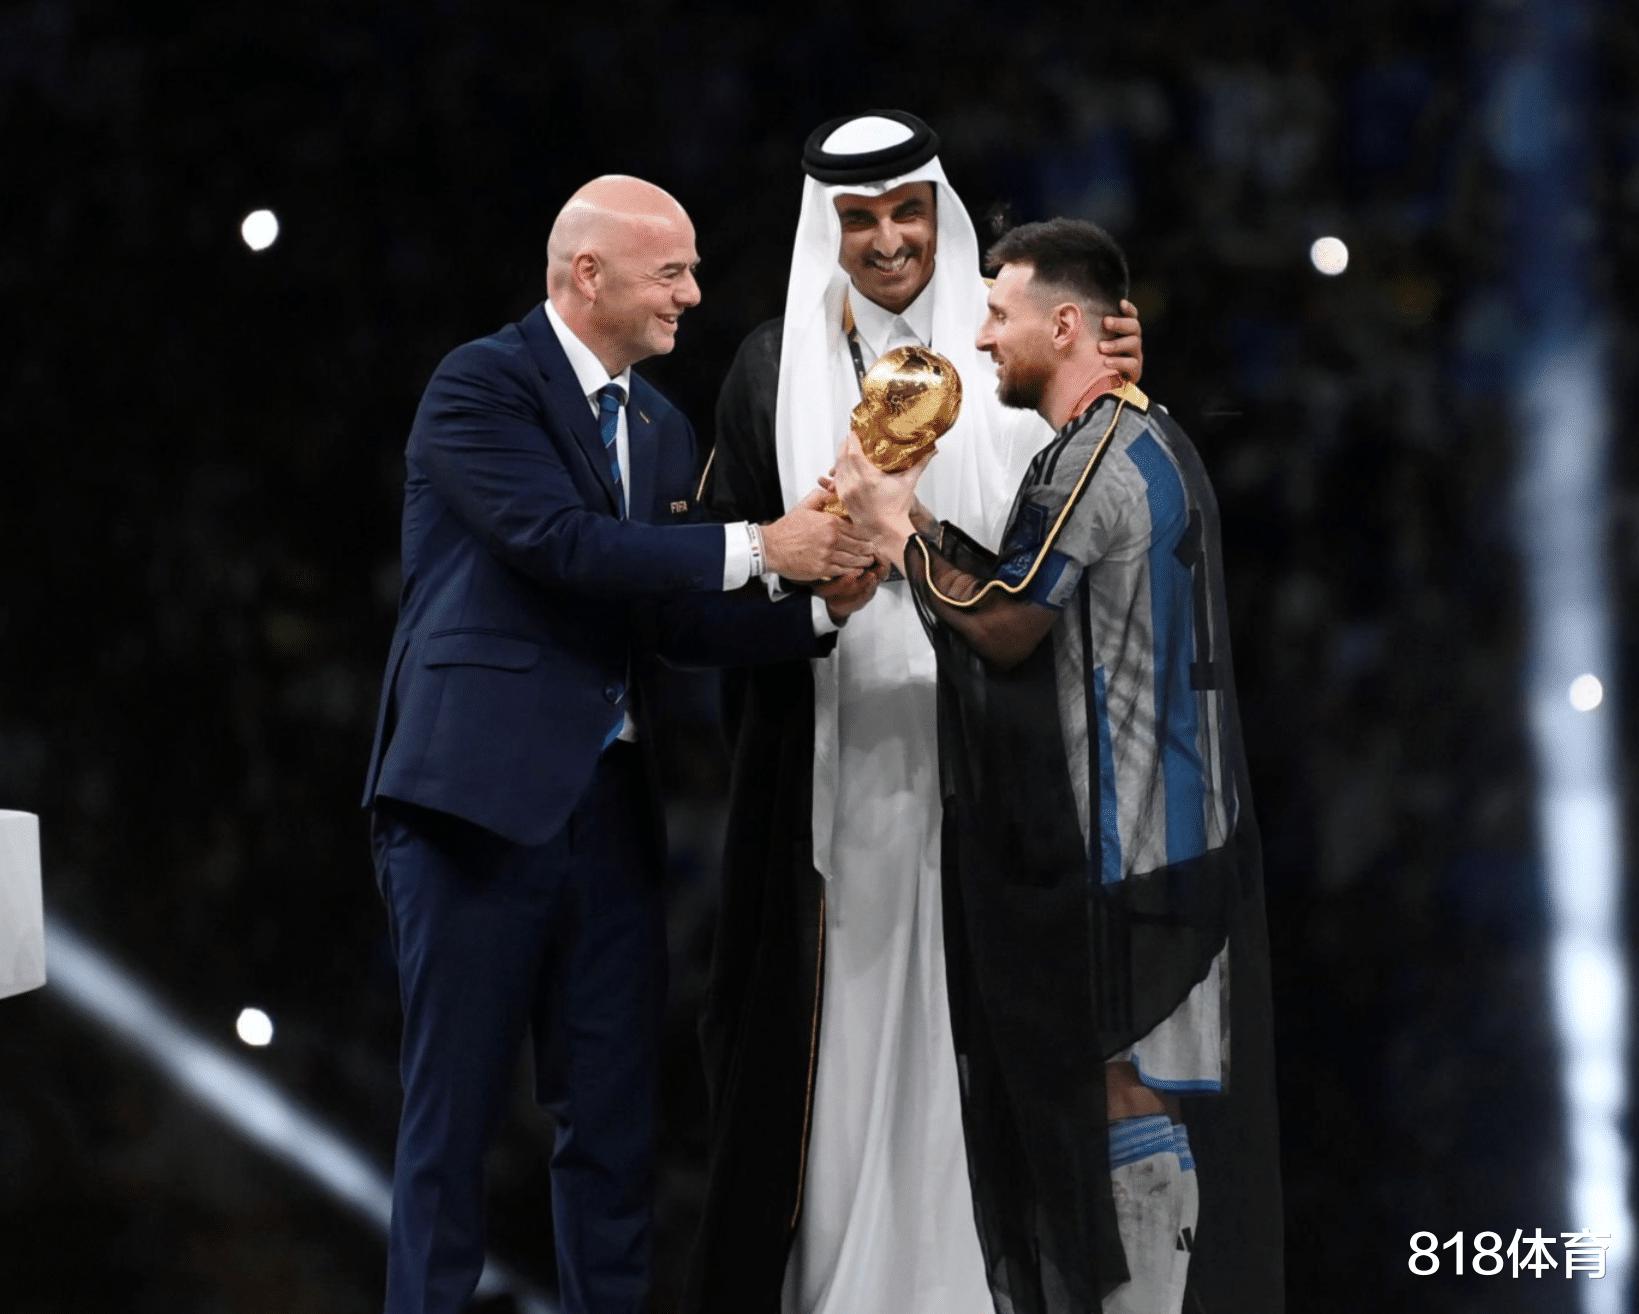 球王加冕! 卡塔尔国王为梅西披上王室黑袍, 因凡蒂诺陪着笑脸递上世界杯(10)